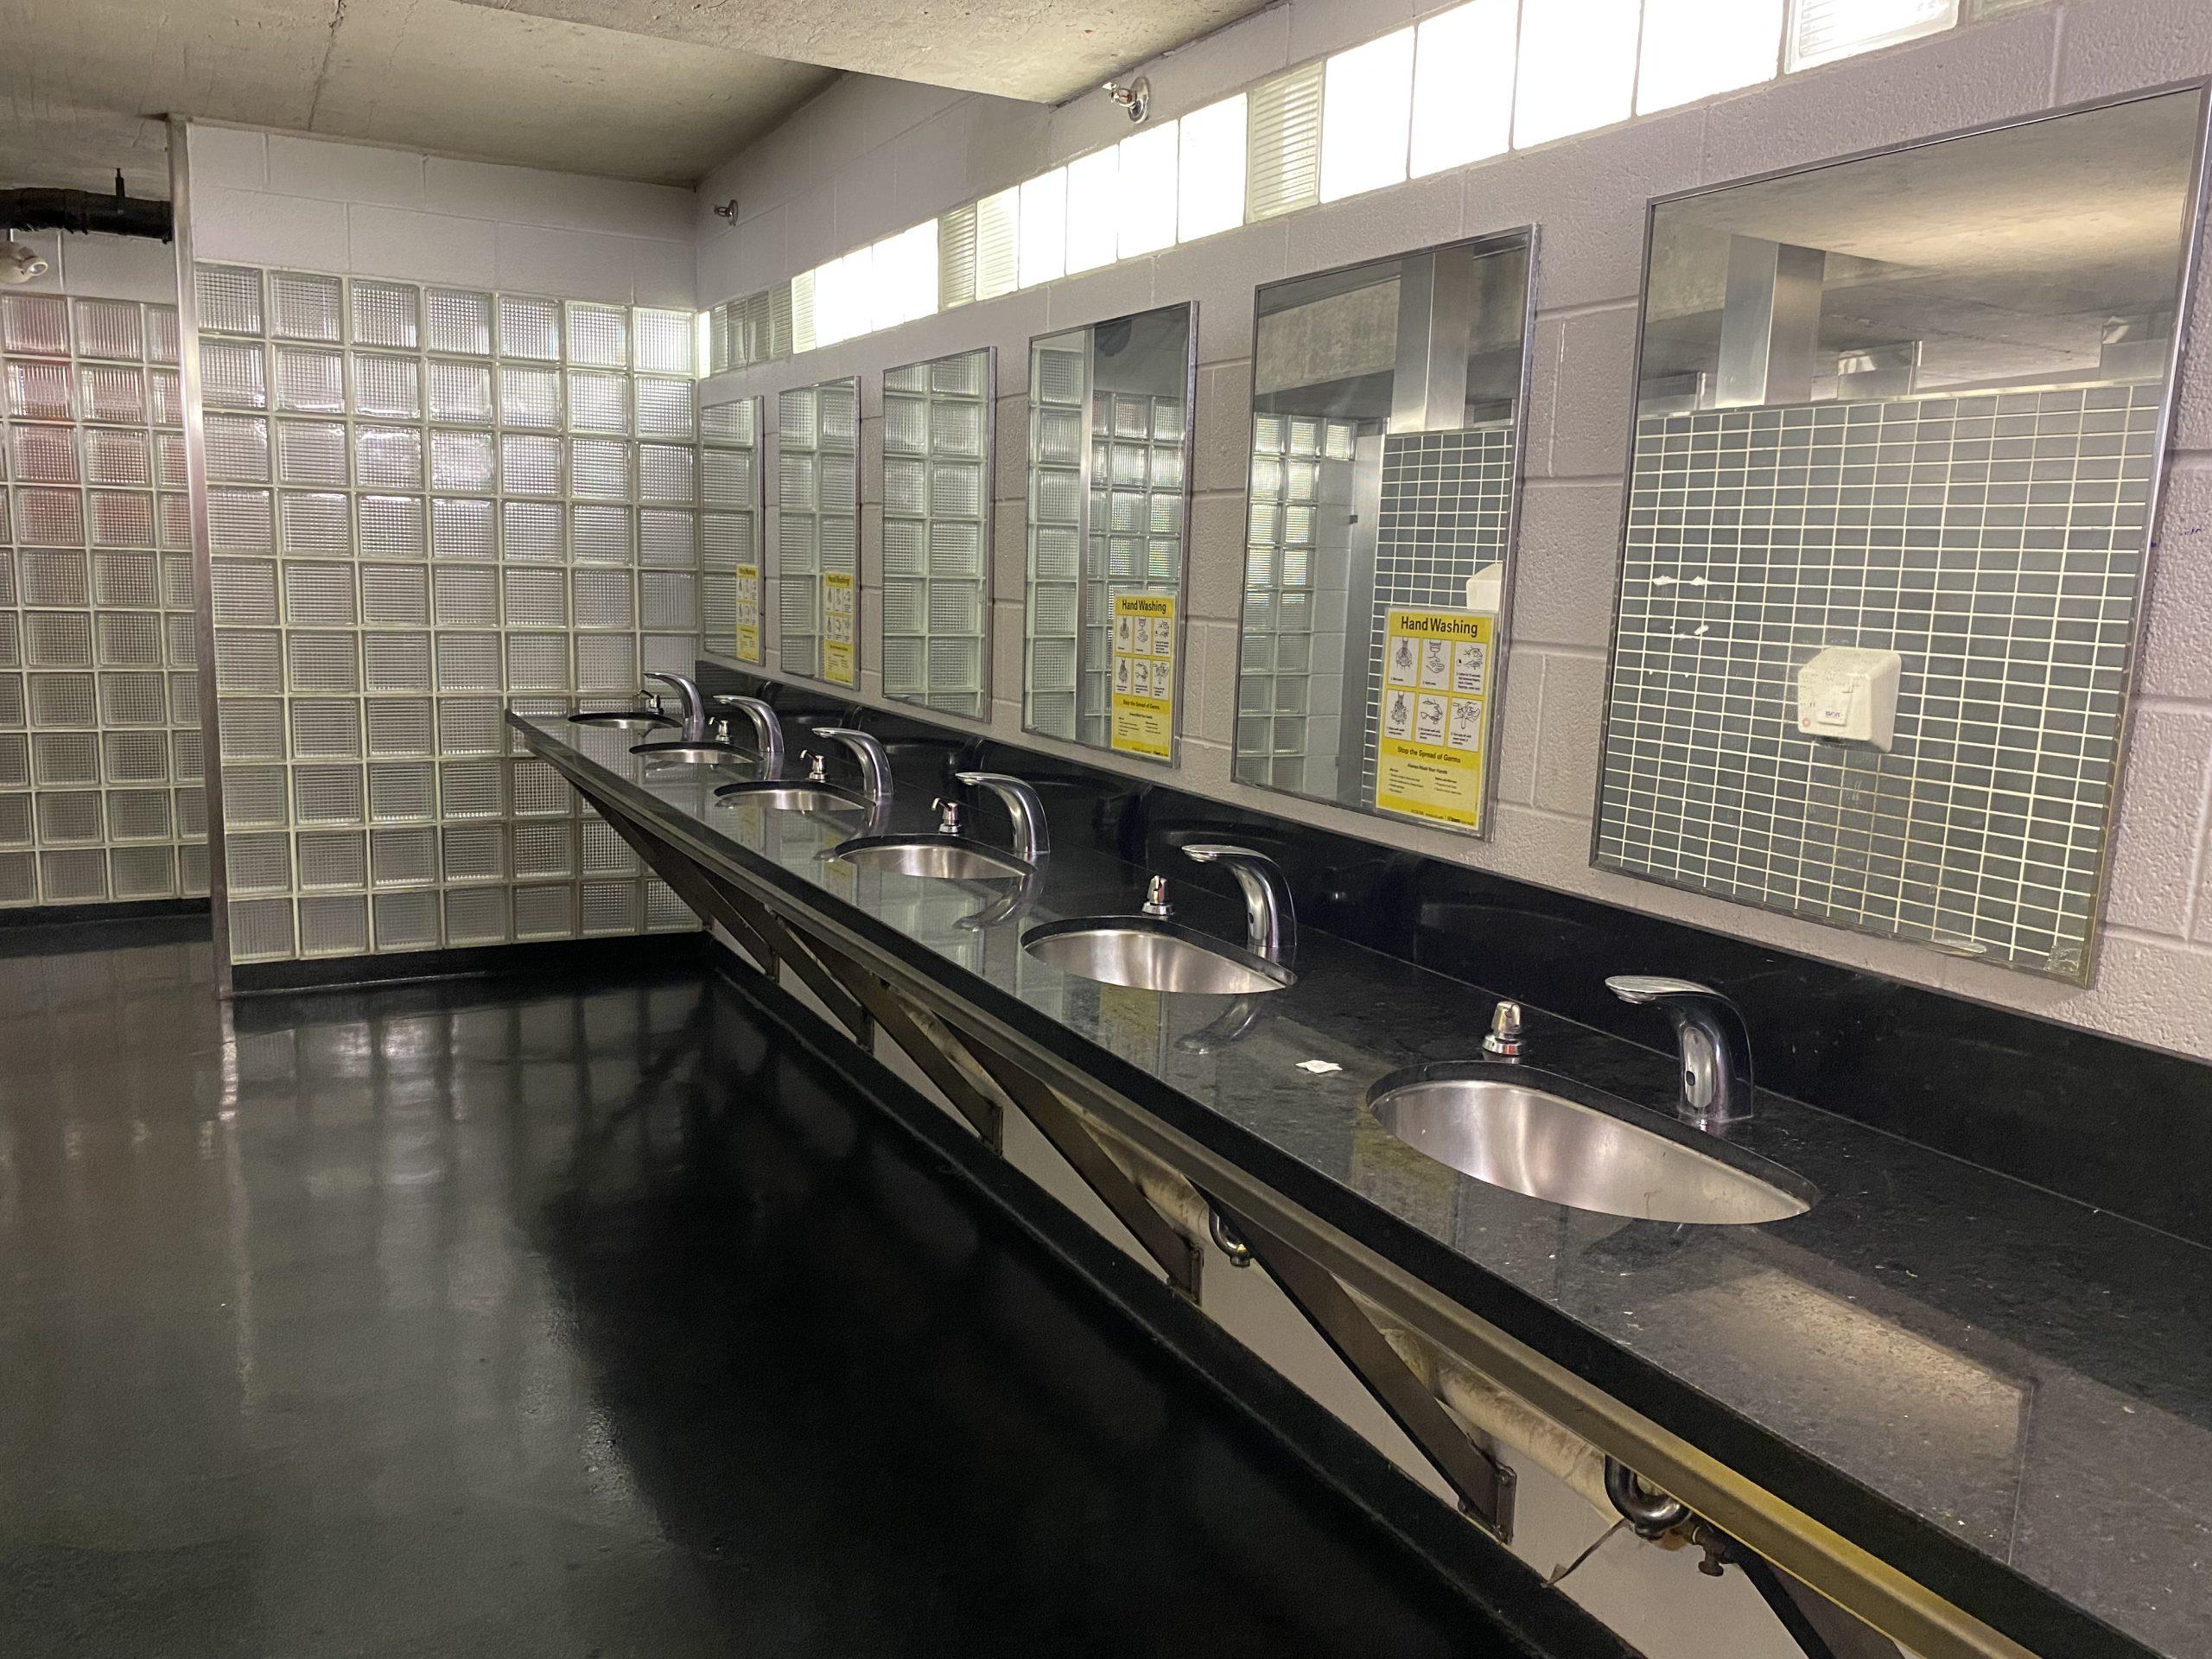 Underground public washroom in Yonge-Dundas Square